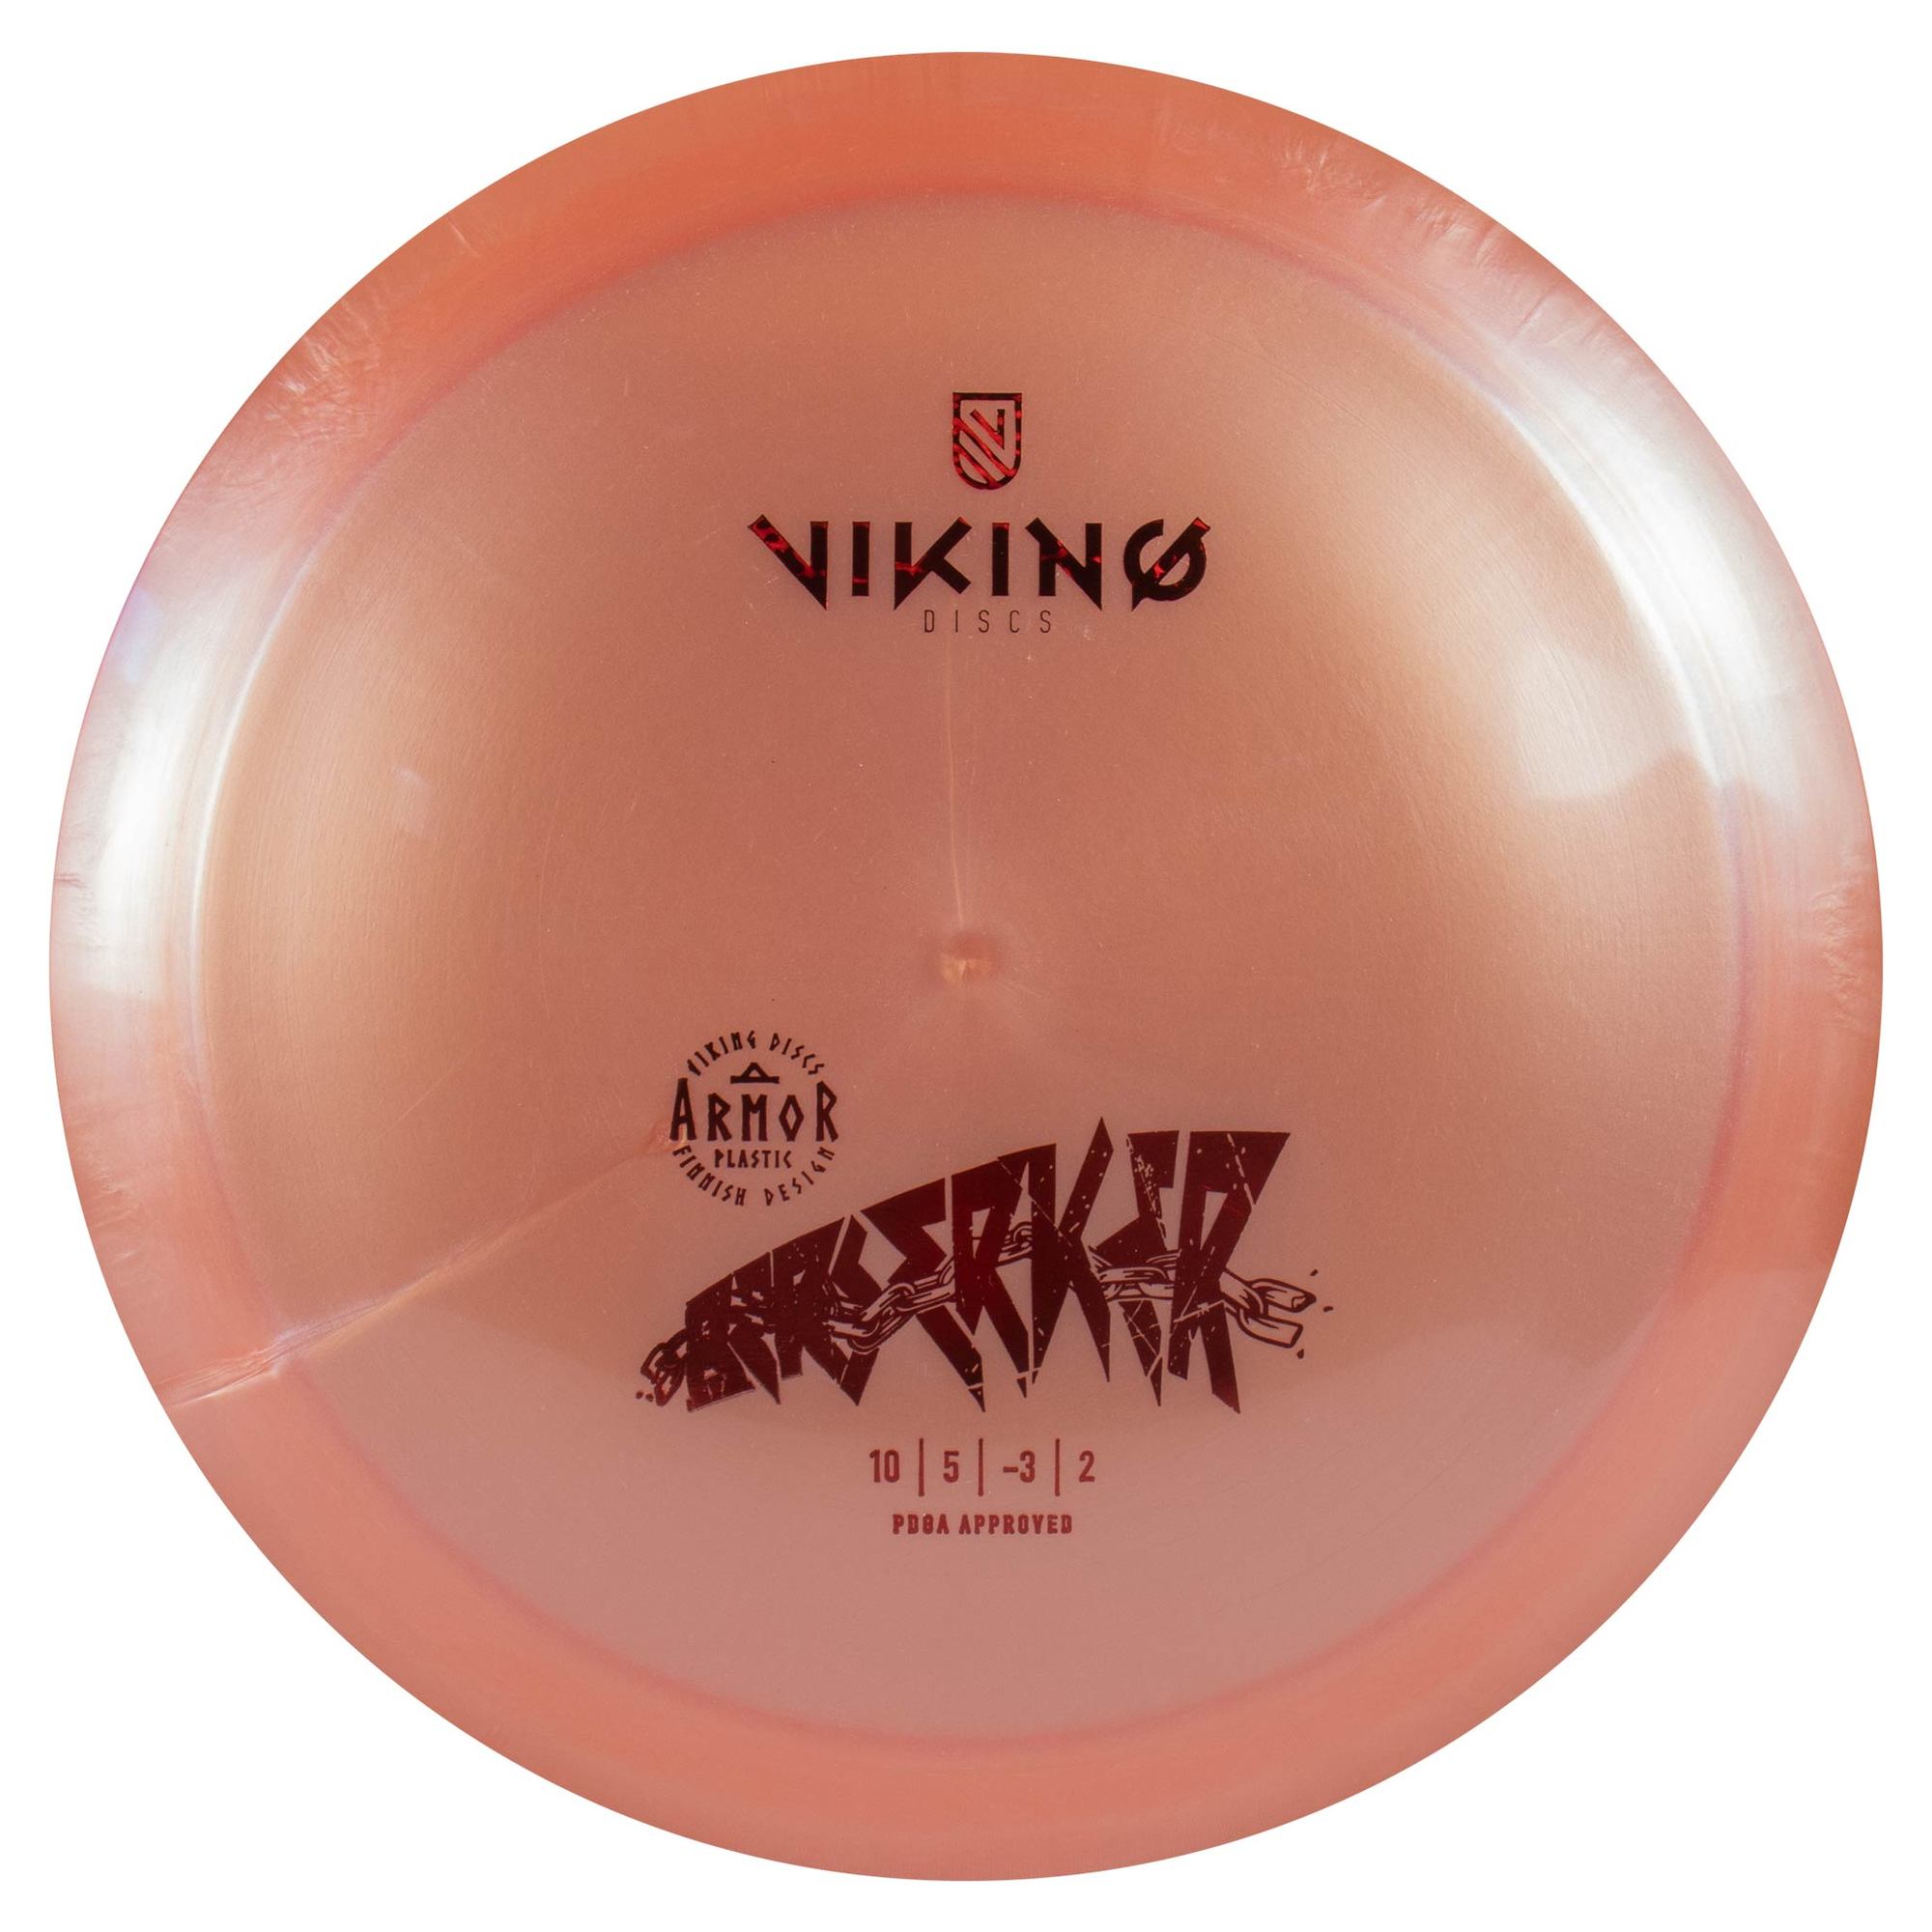 Viking Discs – Armor Beserker